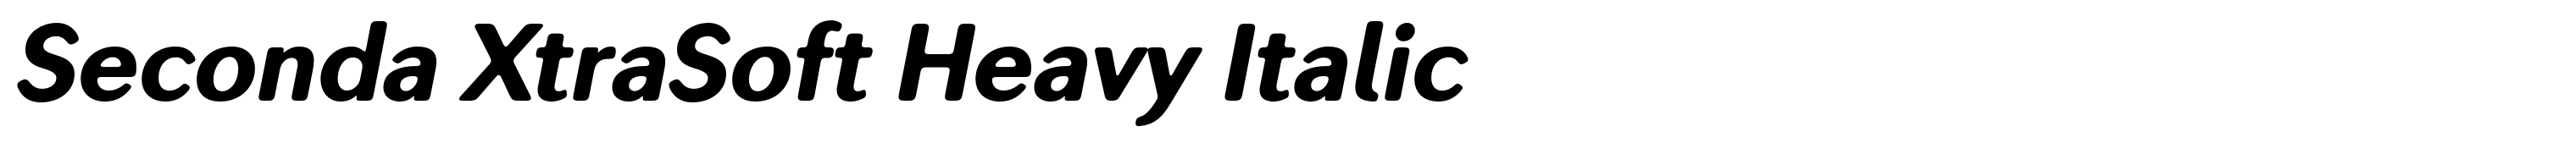 Seconda XtraSoft Heavy Italic